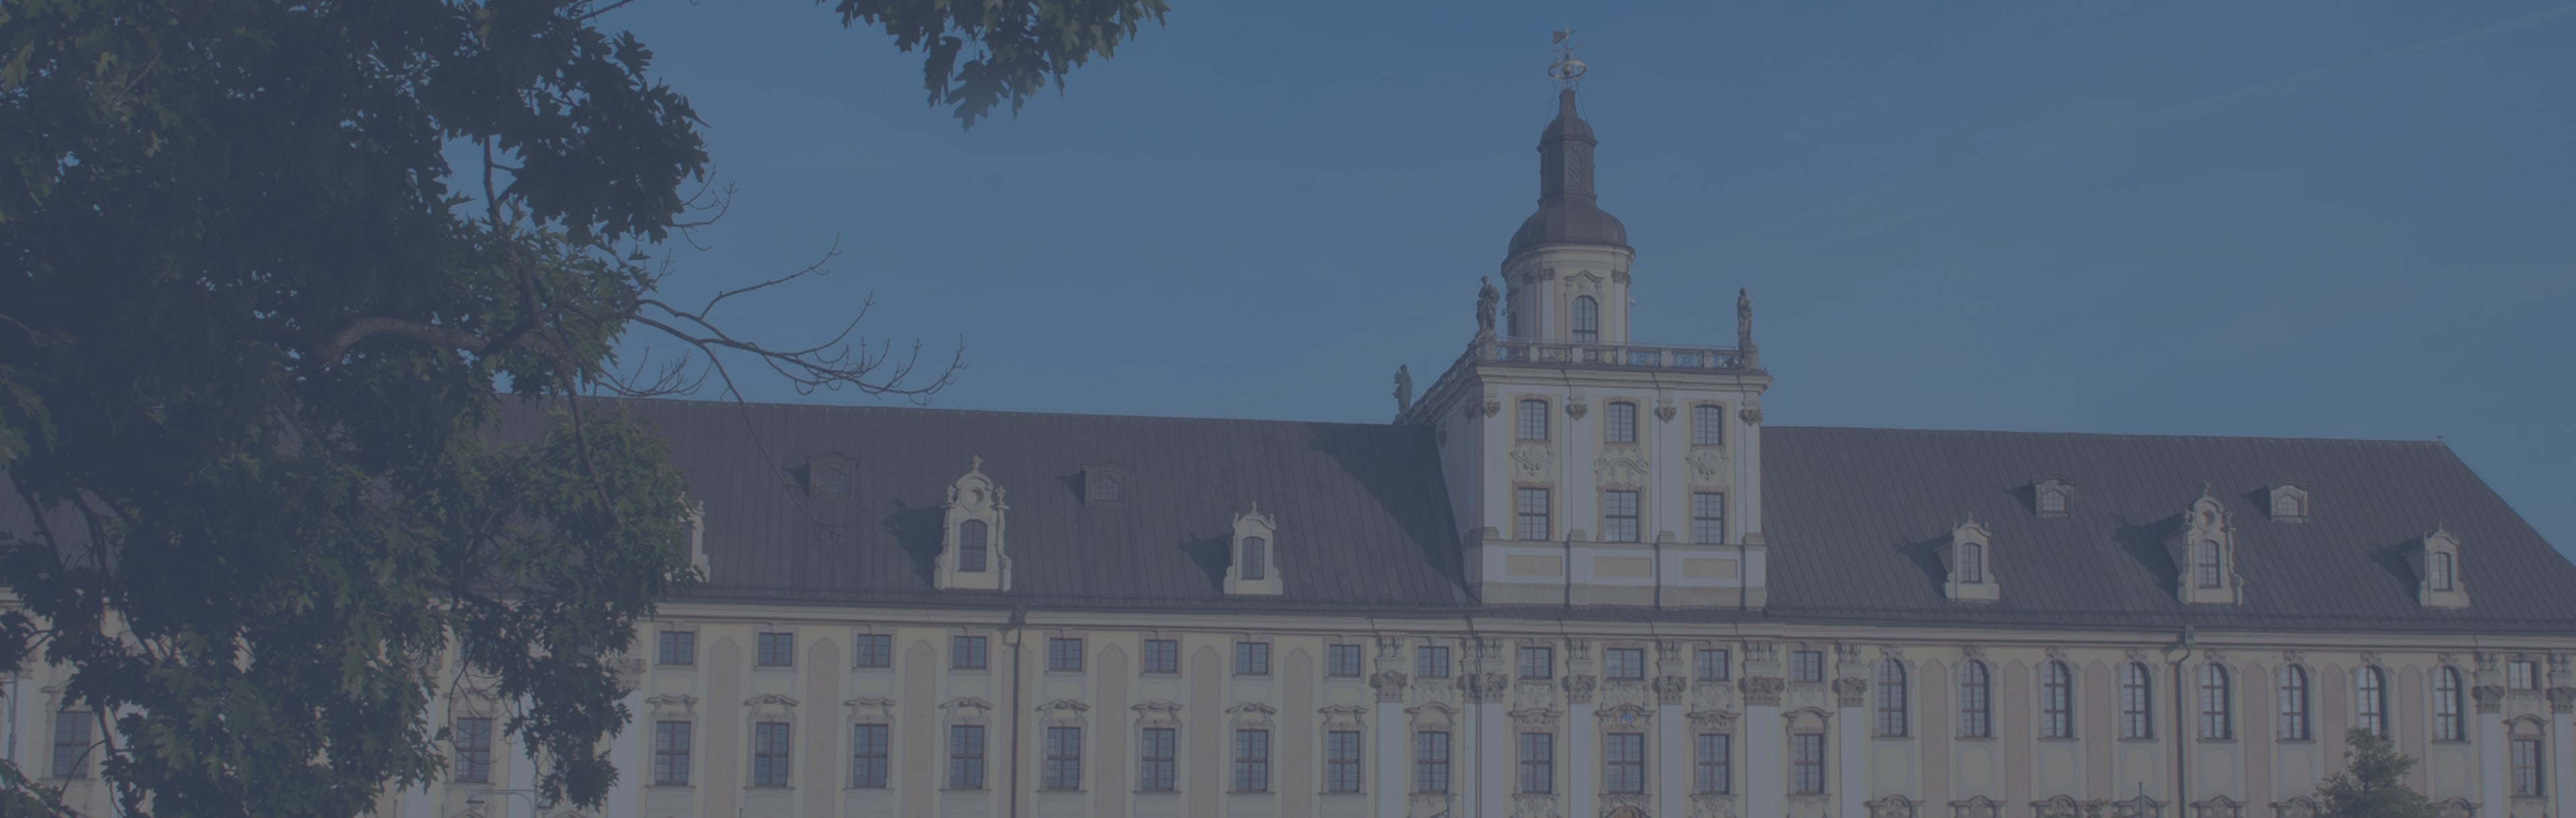 University of Wroclaw LLM en Derecho Internacional y Europeo